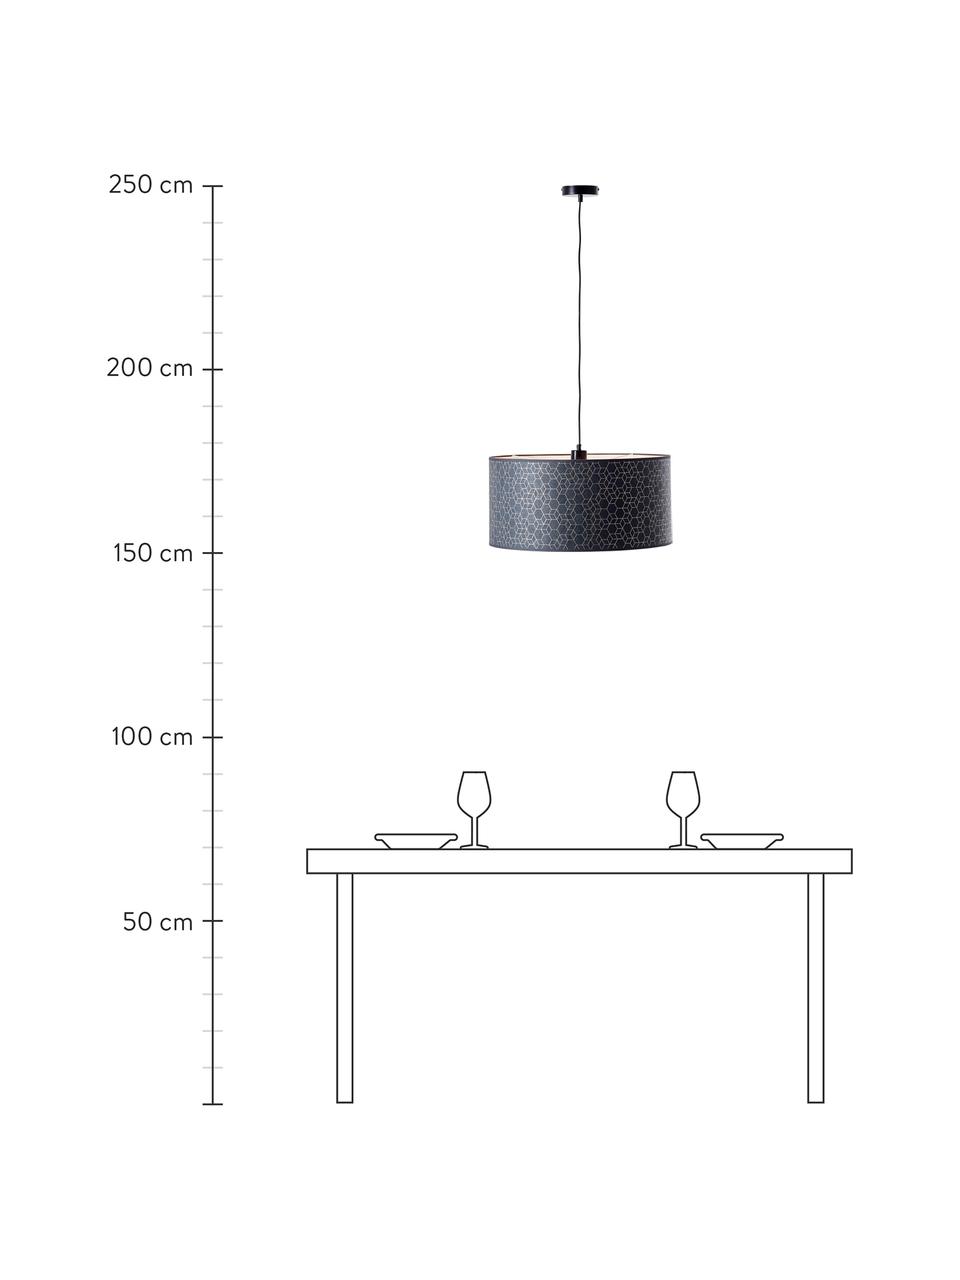 Hanglamp Galance in zwart, Lampenkap: stof, Baldakijn: kunststof, Zwart, Ø 50 x H 25 cm